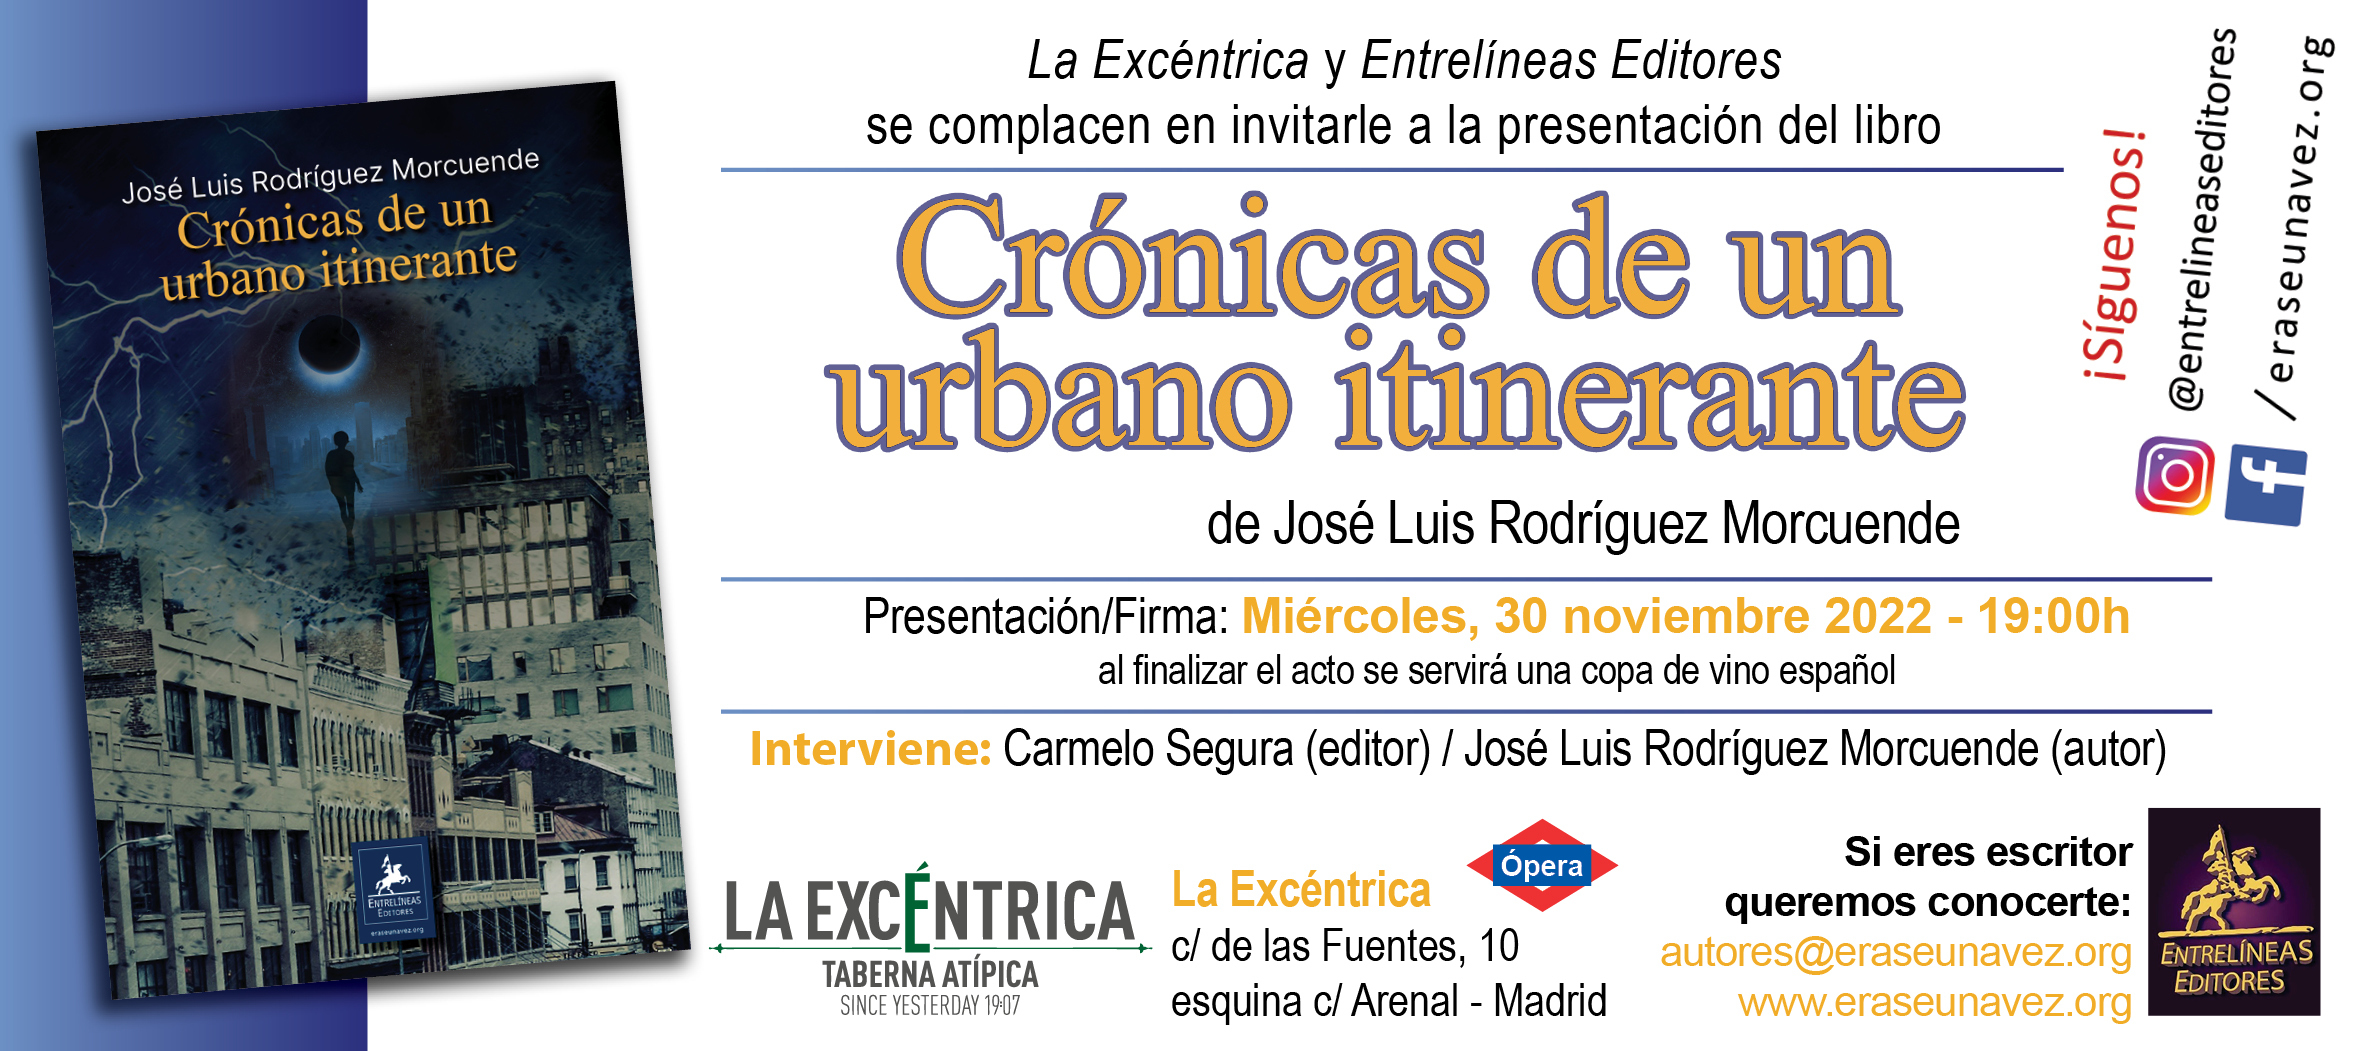 2022-11-30_-_Cronicas_de_un_urbano_-_invitacion